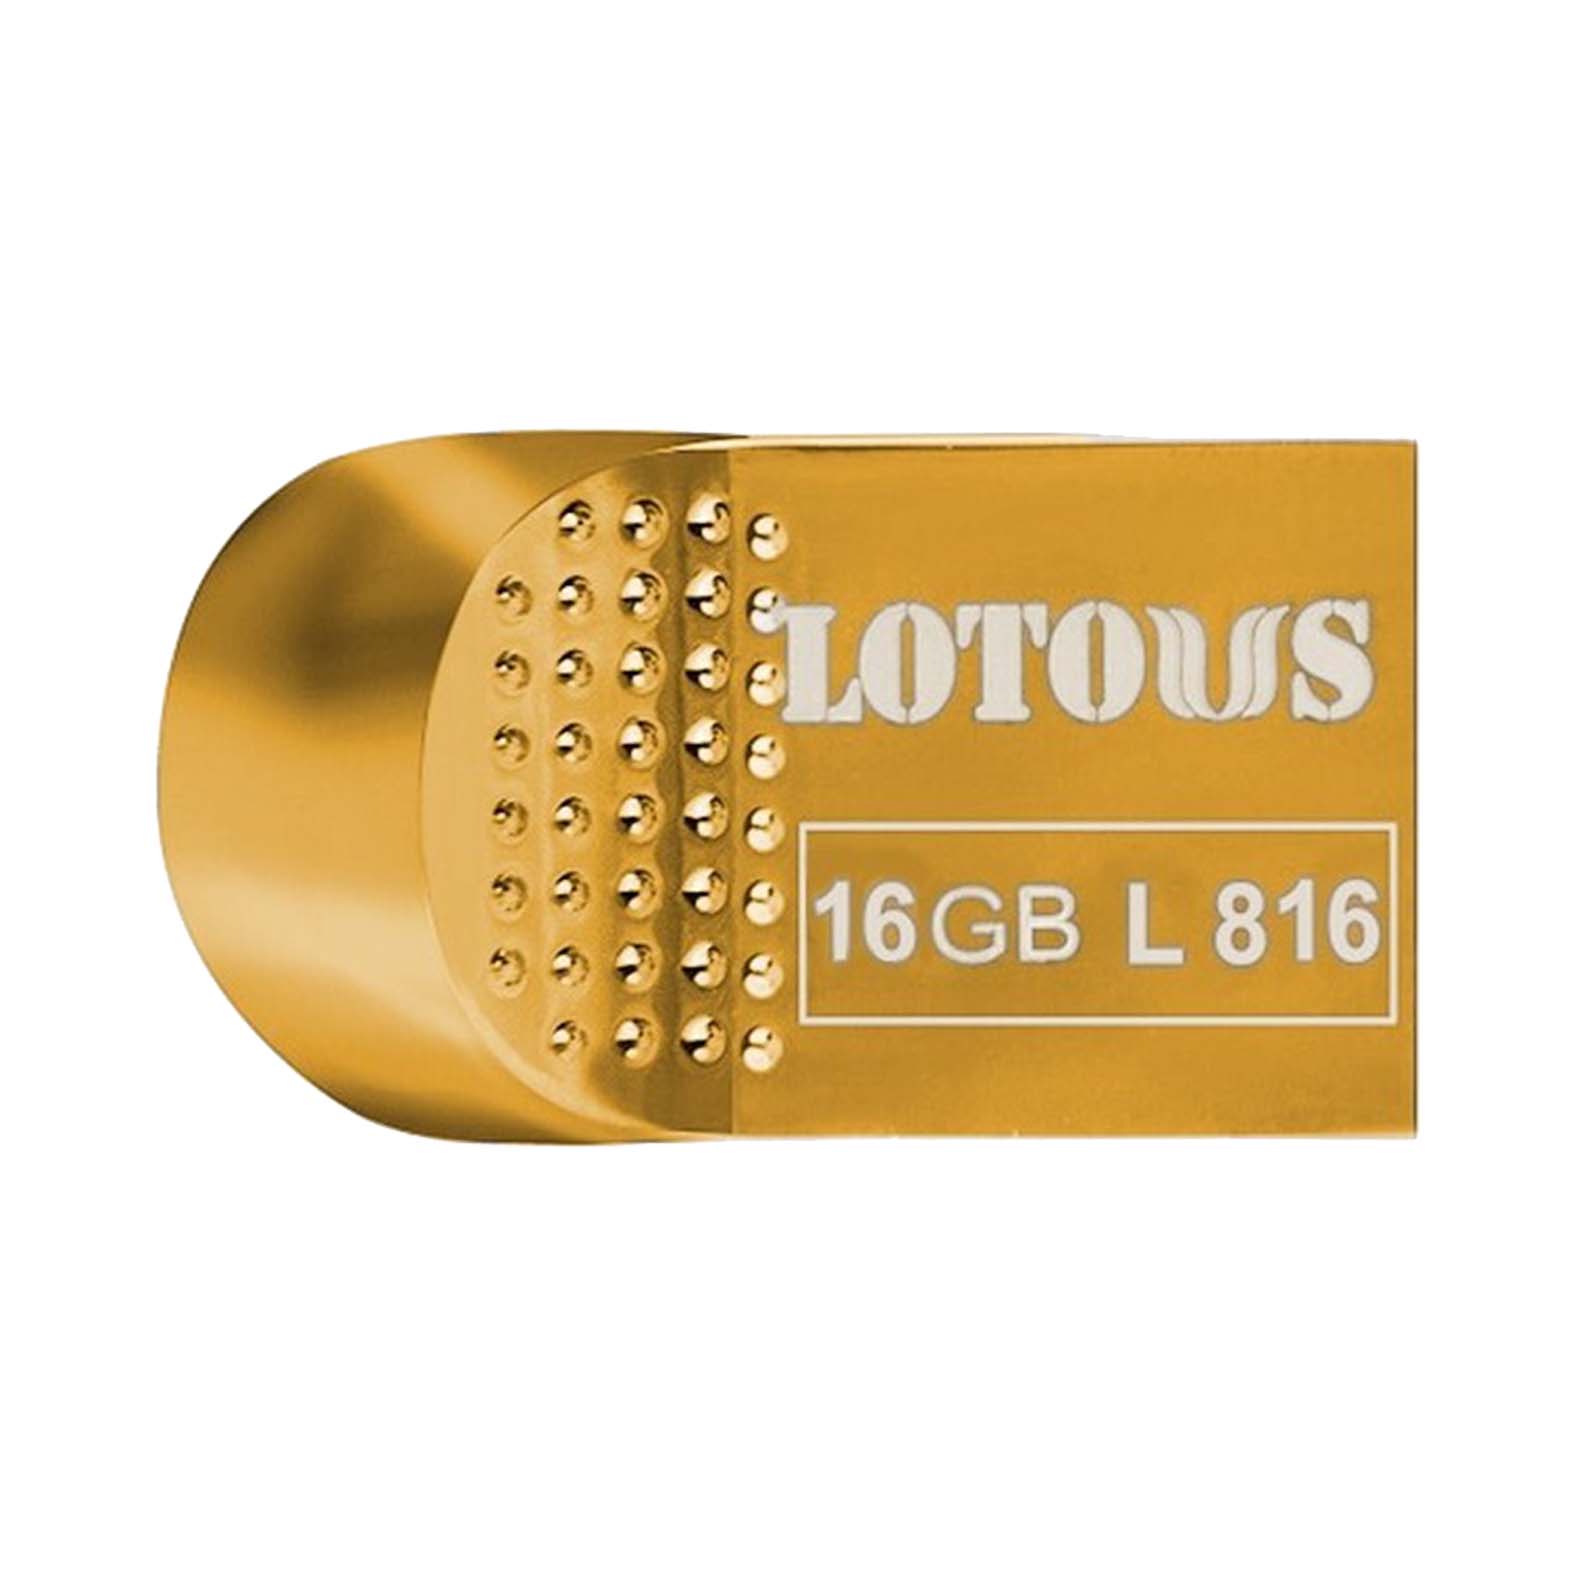 فلش مموری لوتوس مدل L-816 USB 3.1 ظرفیت 16 گیگابایت Flash memory Lotous model L-816 USB 3.1 | لایف رایان زنجان